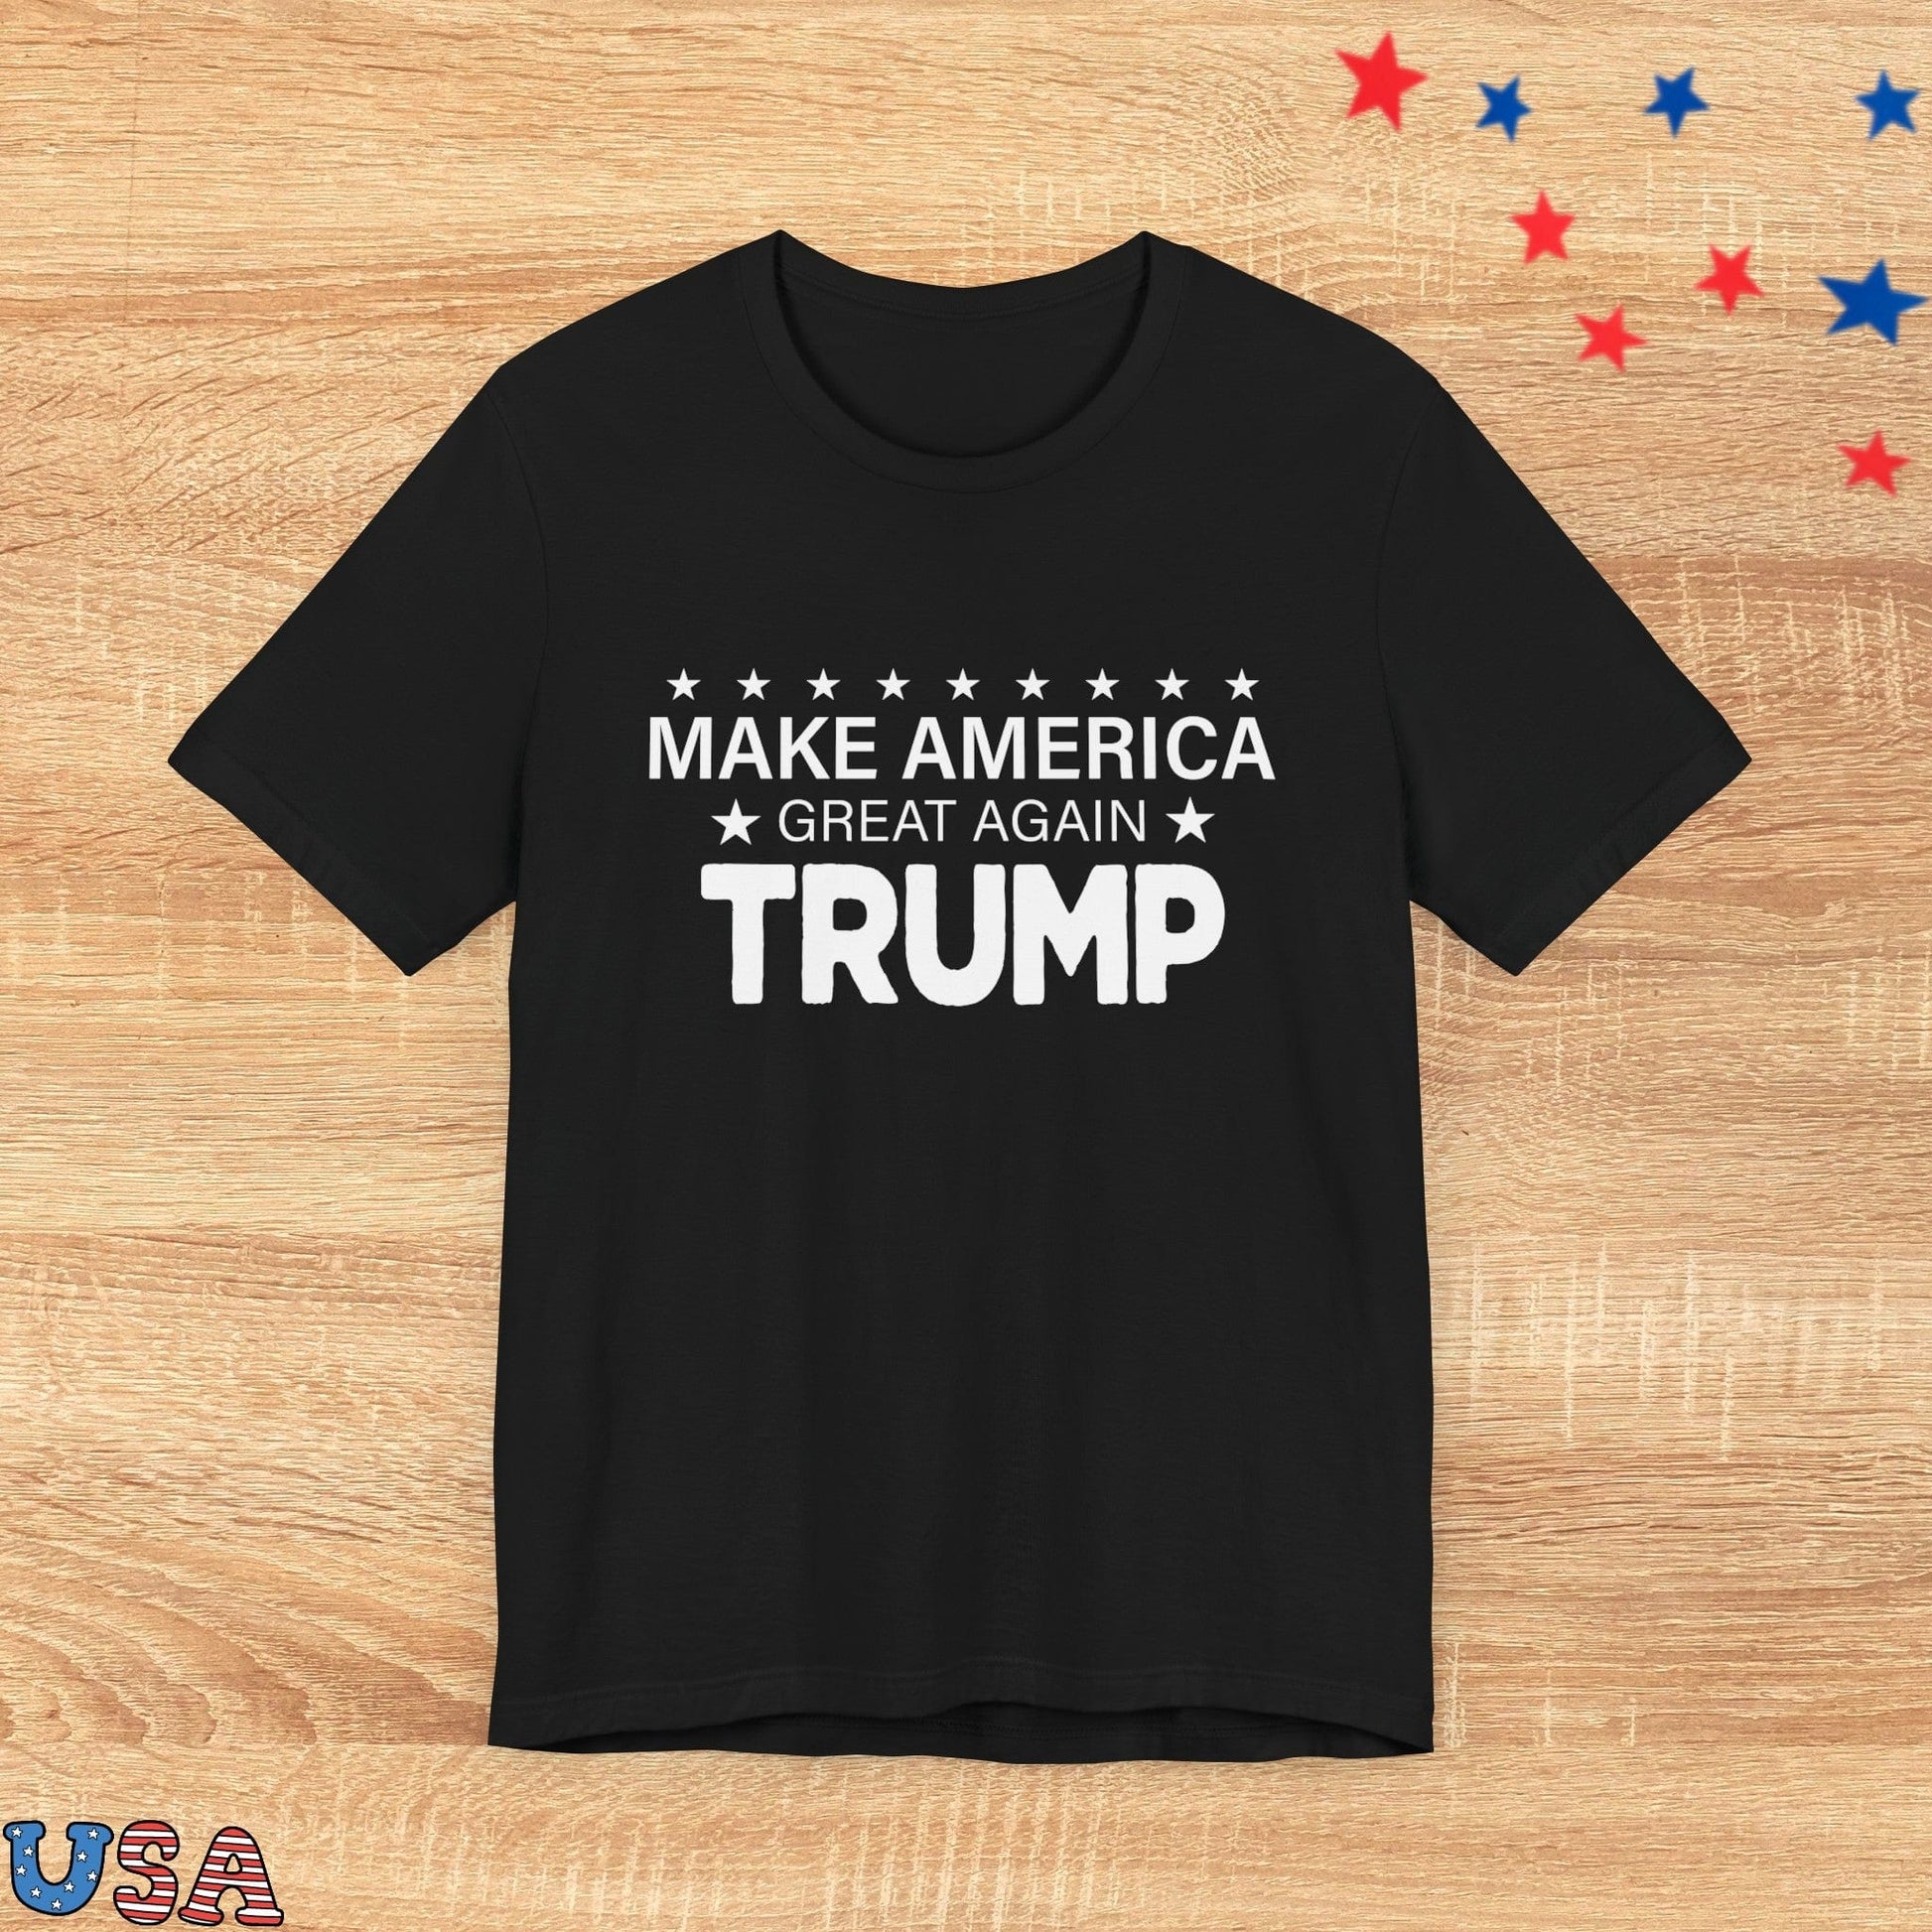 patriotic stars T-Shirt Black / XS Make America Great Again Trump